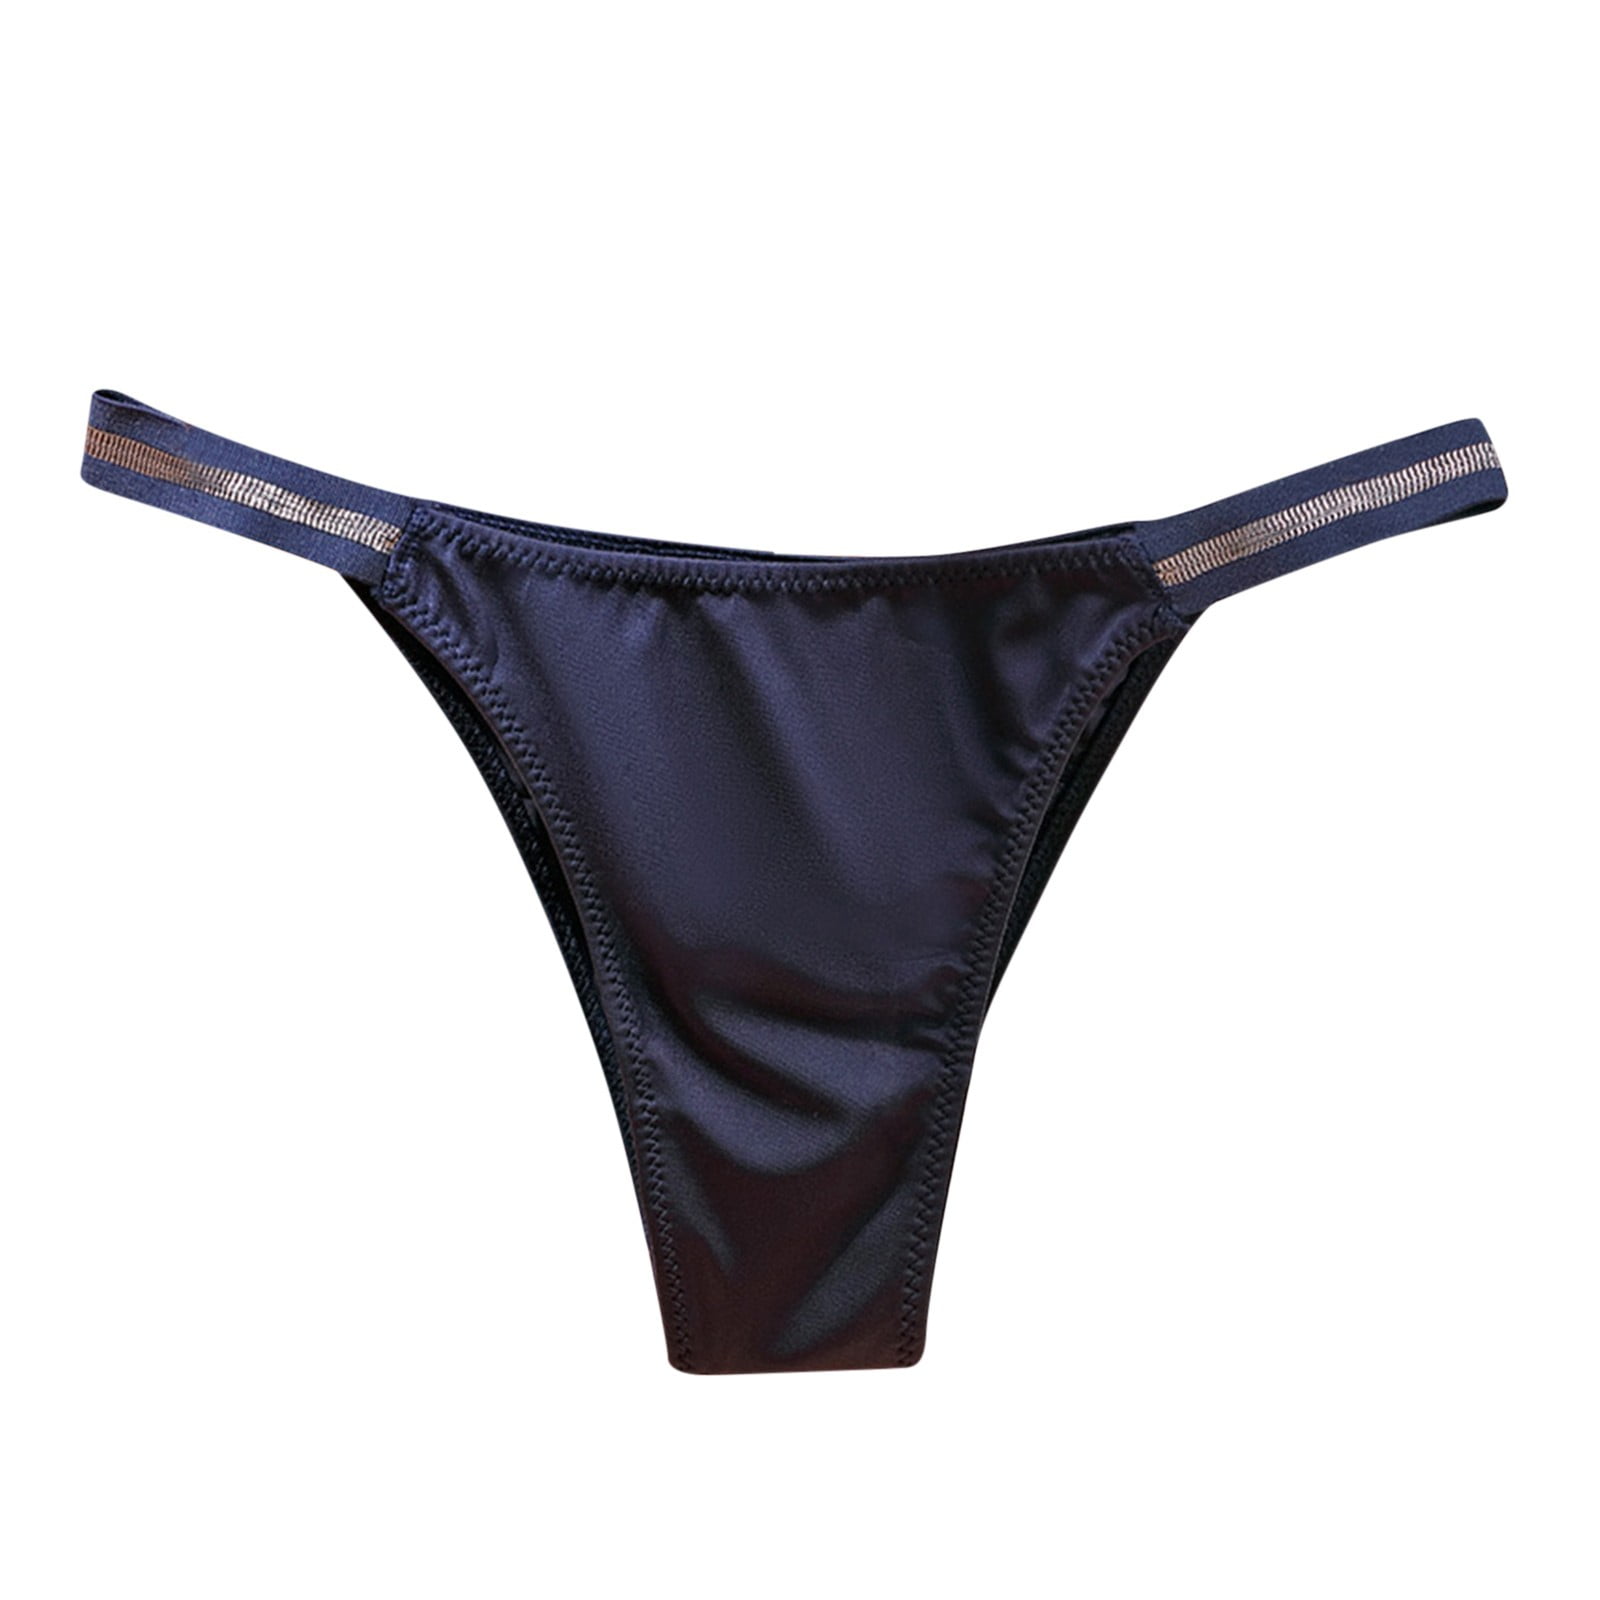 Pedort Sport Bras for Women Underwear Women Sports Bras - Padded